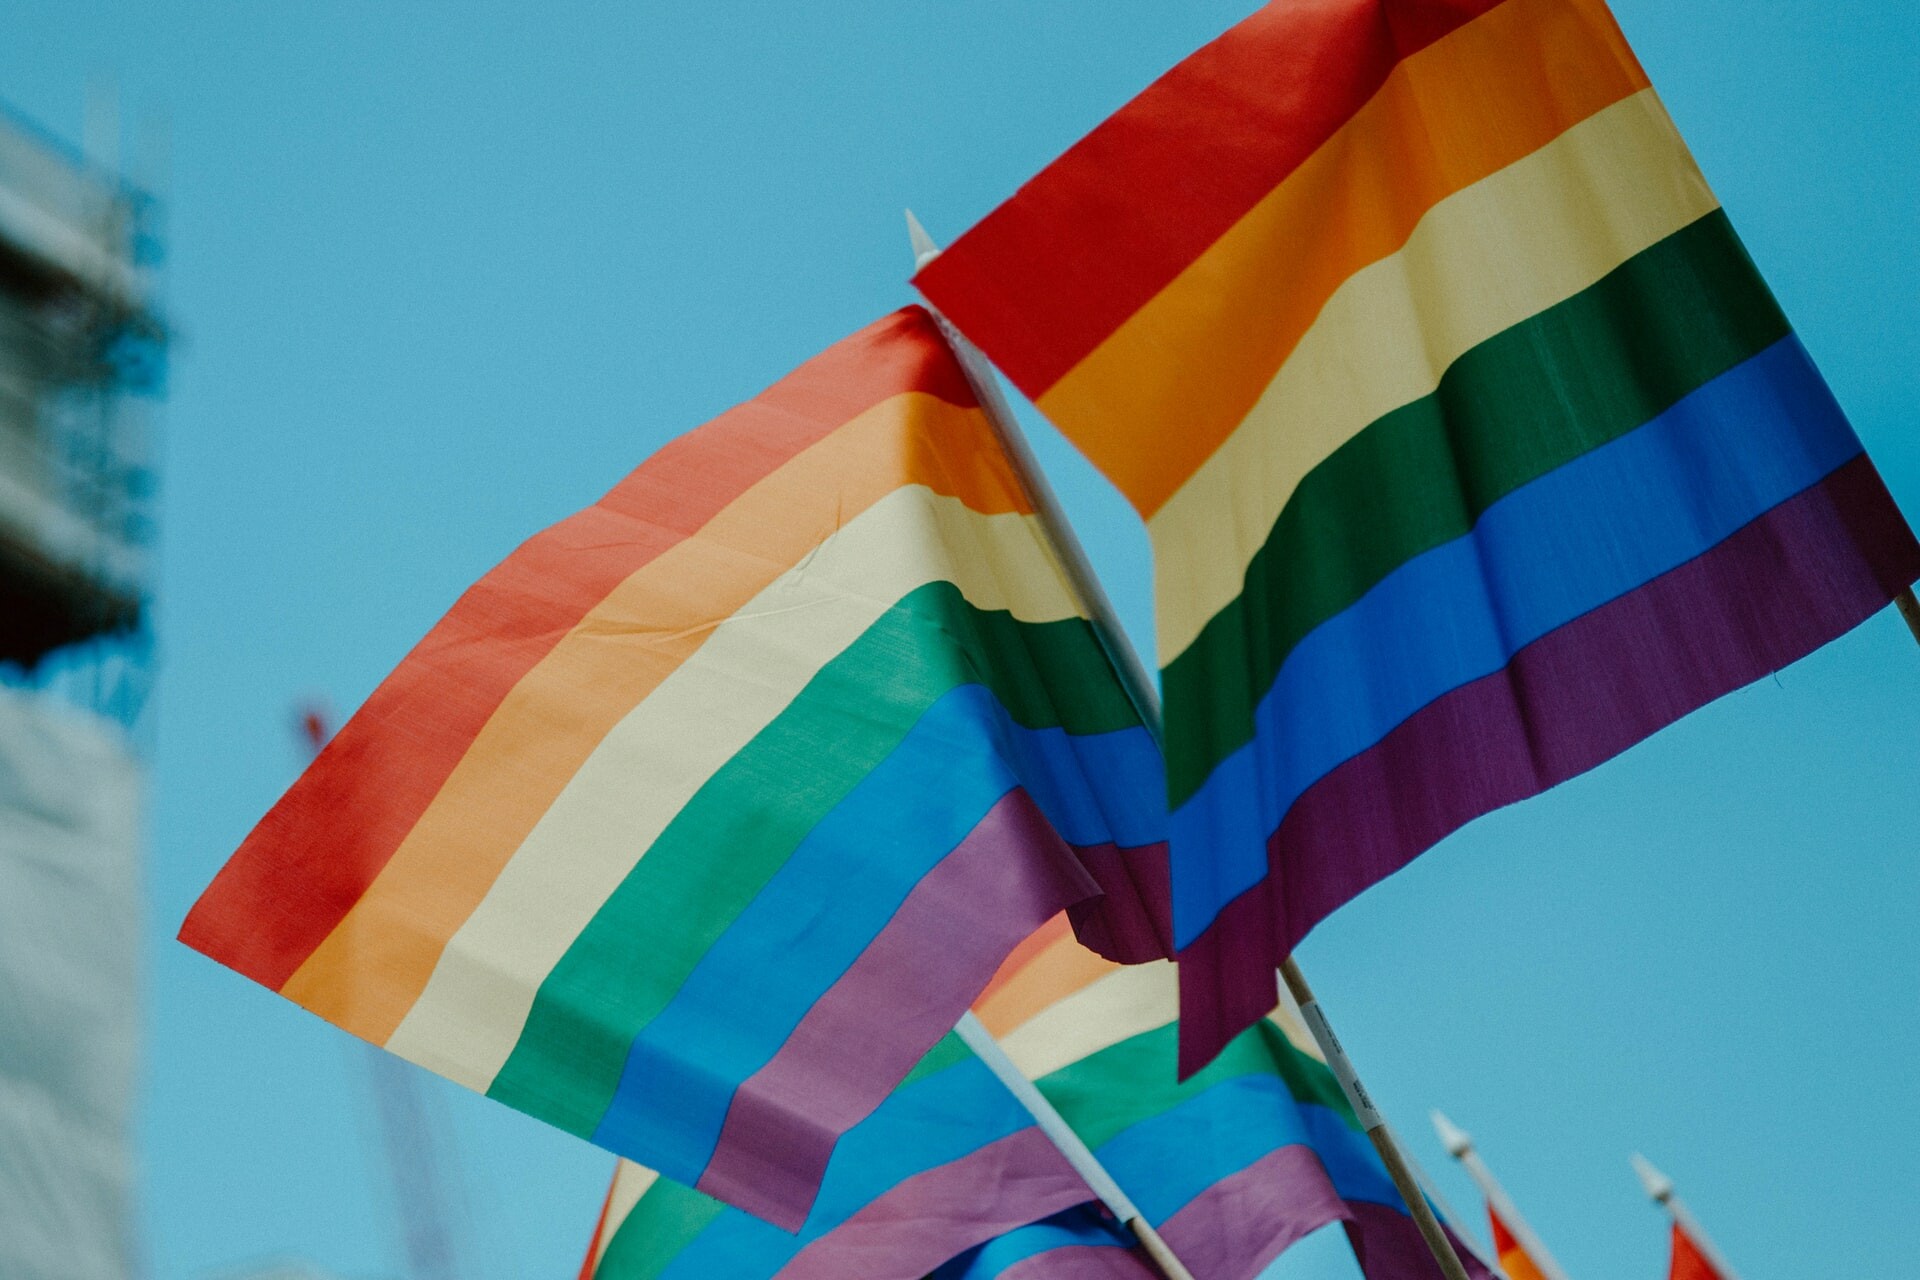 Νέα έκθεση της Deloitte: Οι προσπάθειες ένταξης των LGBT+ έχουν θετικό αντίκτυπο στο χώρο εργασίας, ωστόσο οι προκλήσεις εξακολουθούν να υφίστανται